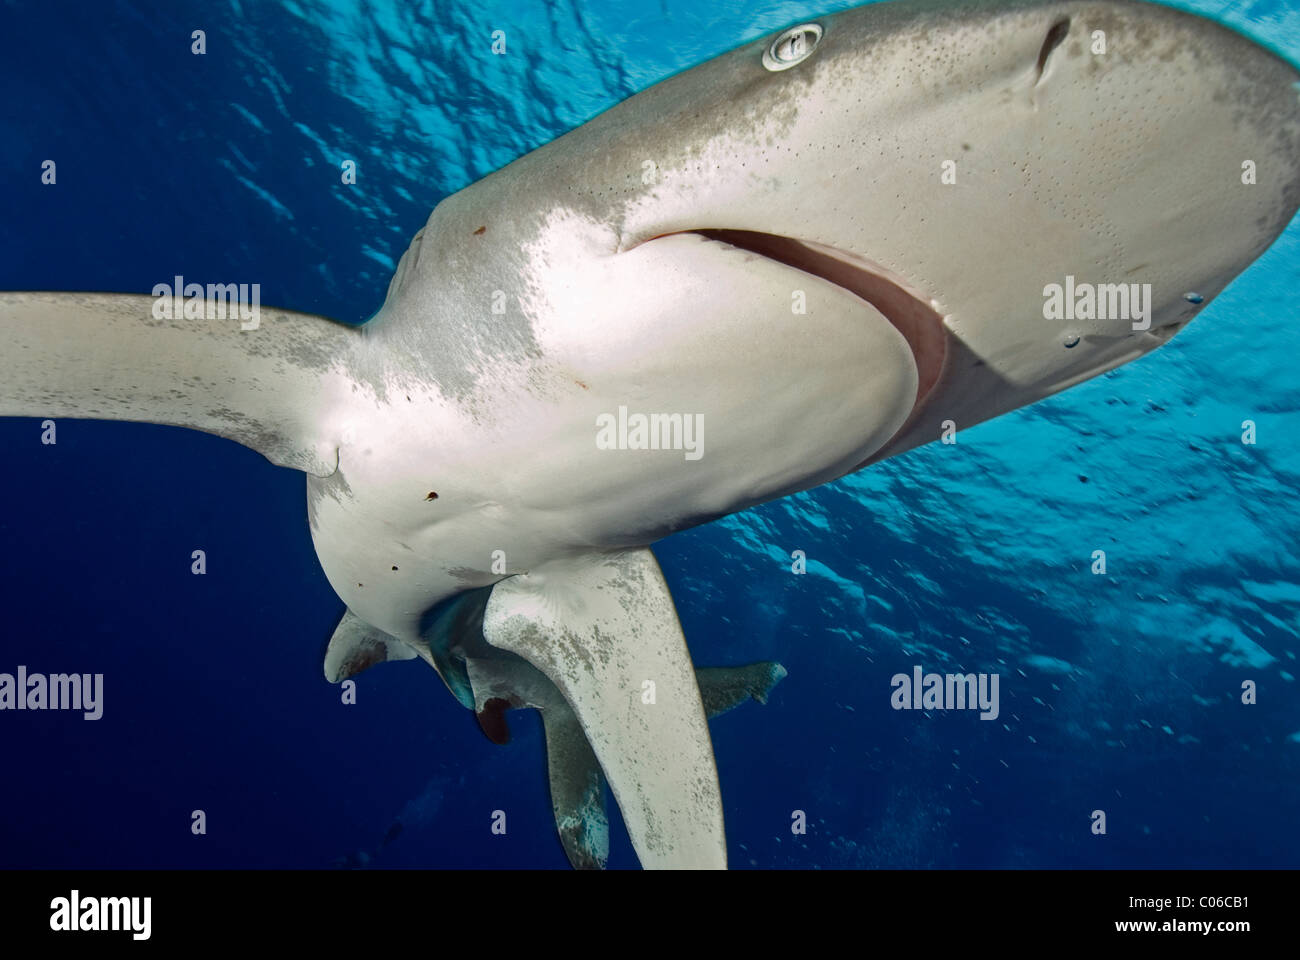 Oceanic whitetip shark, Elphinstone, Egypt Stock Photo